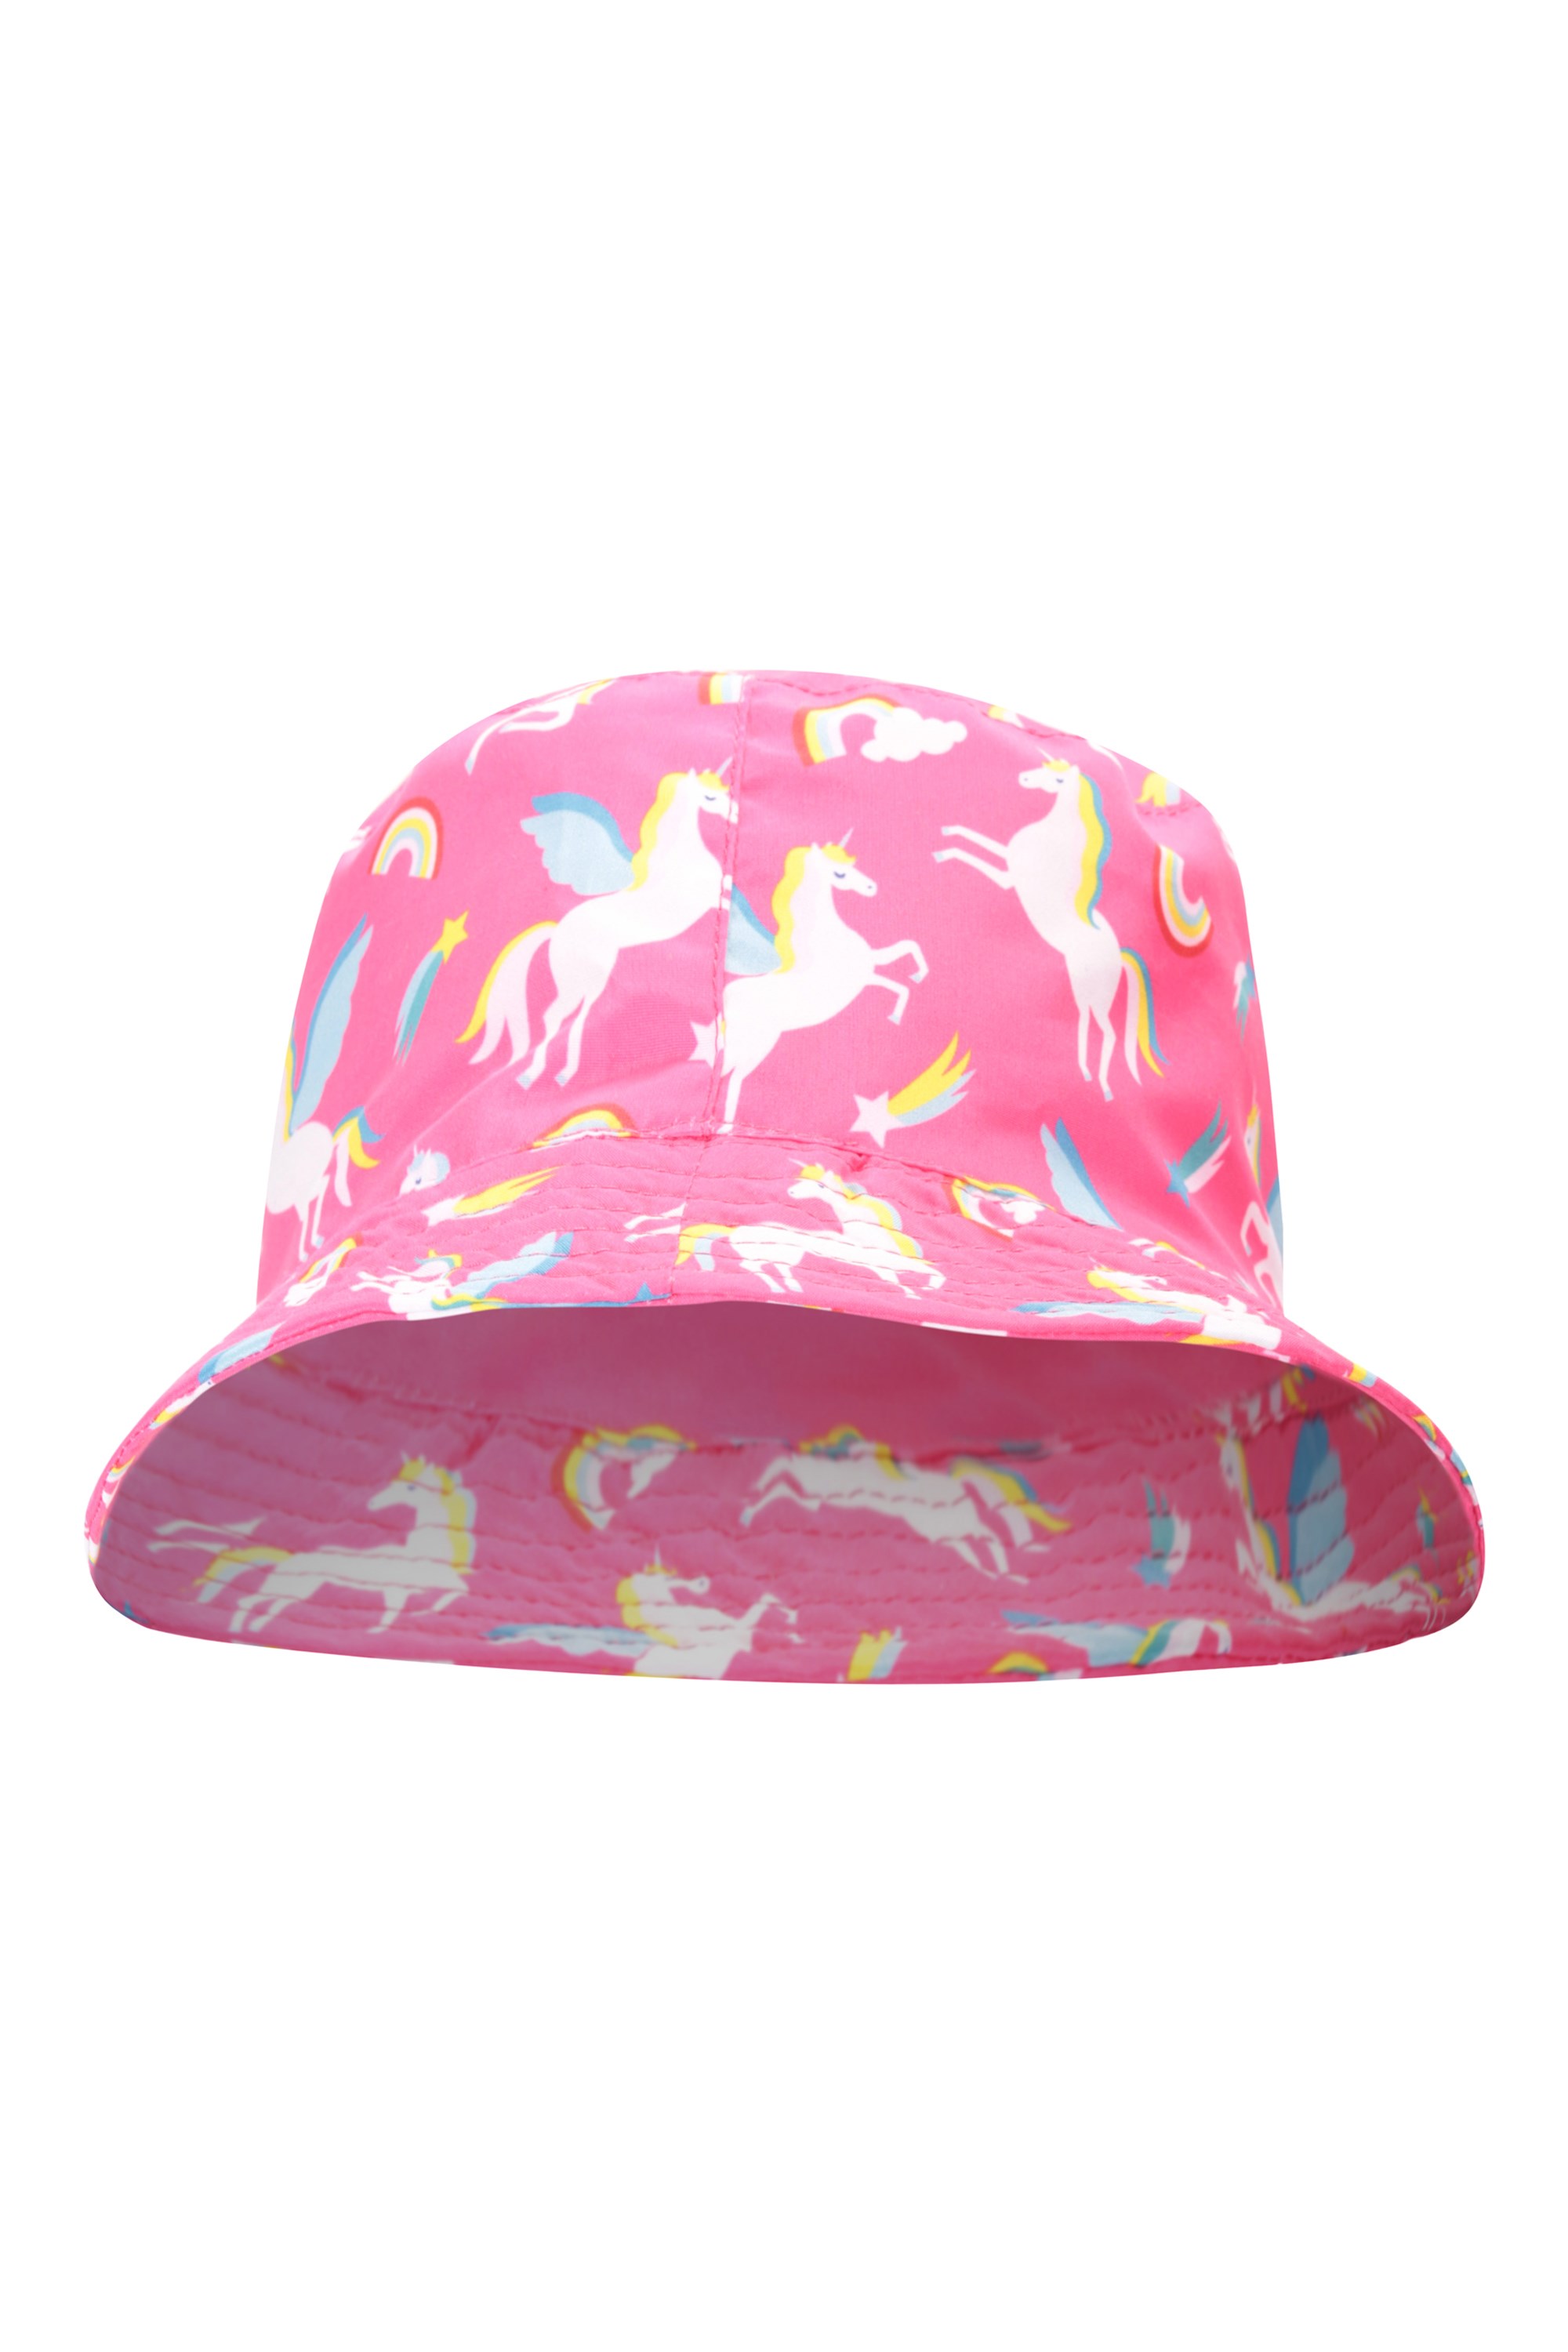 Printed Kids Bucket Hat - Pink